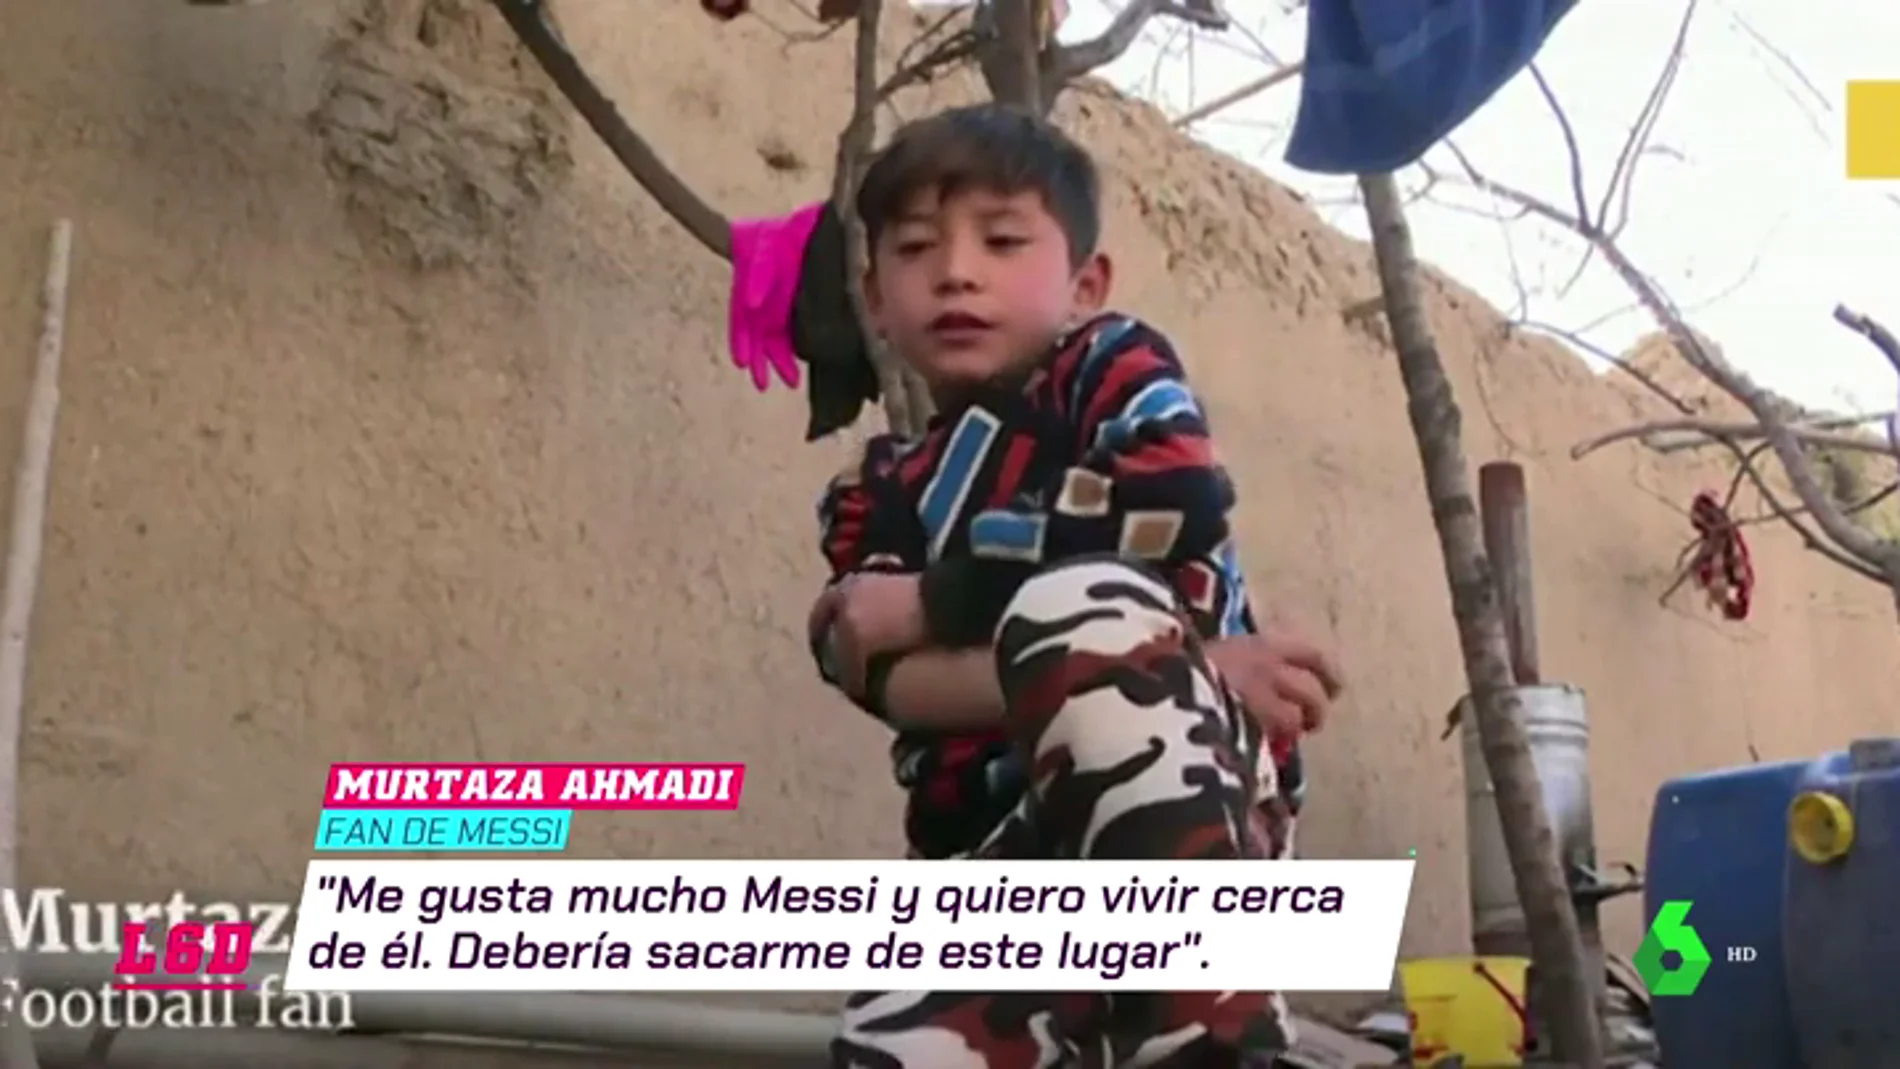 El drama de Murtaza, el pequeño 'Messi afgano', tras conocer al jugador del Barça: "Debería sacarme de este lugar"